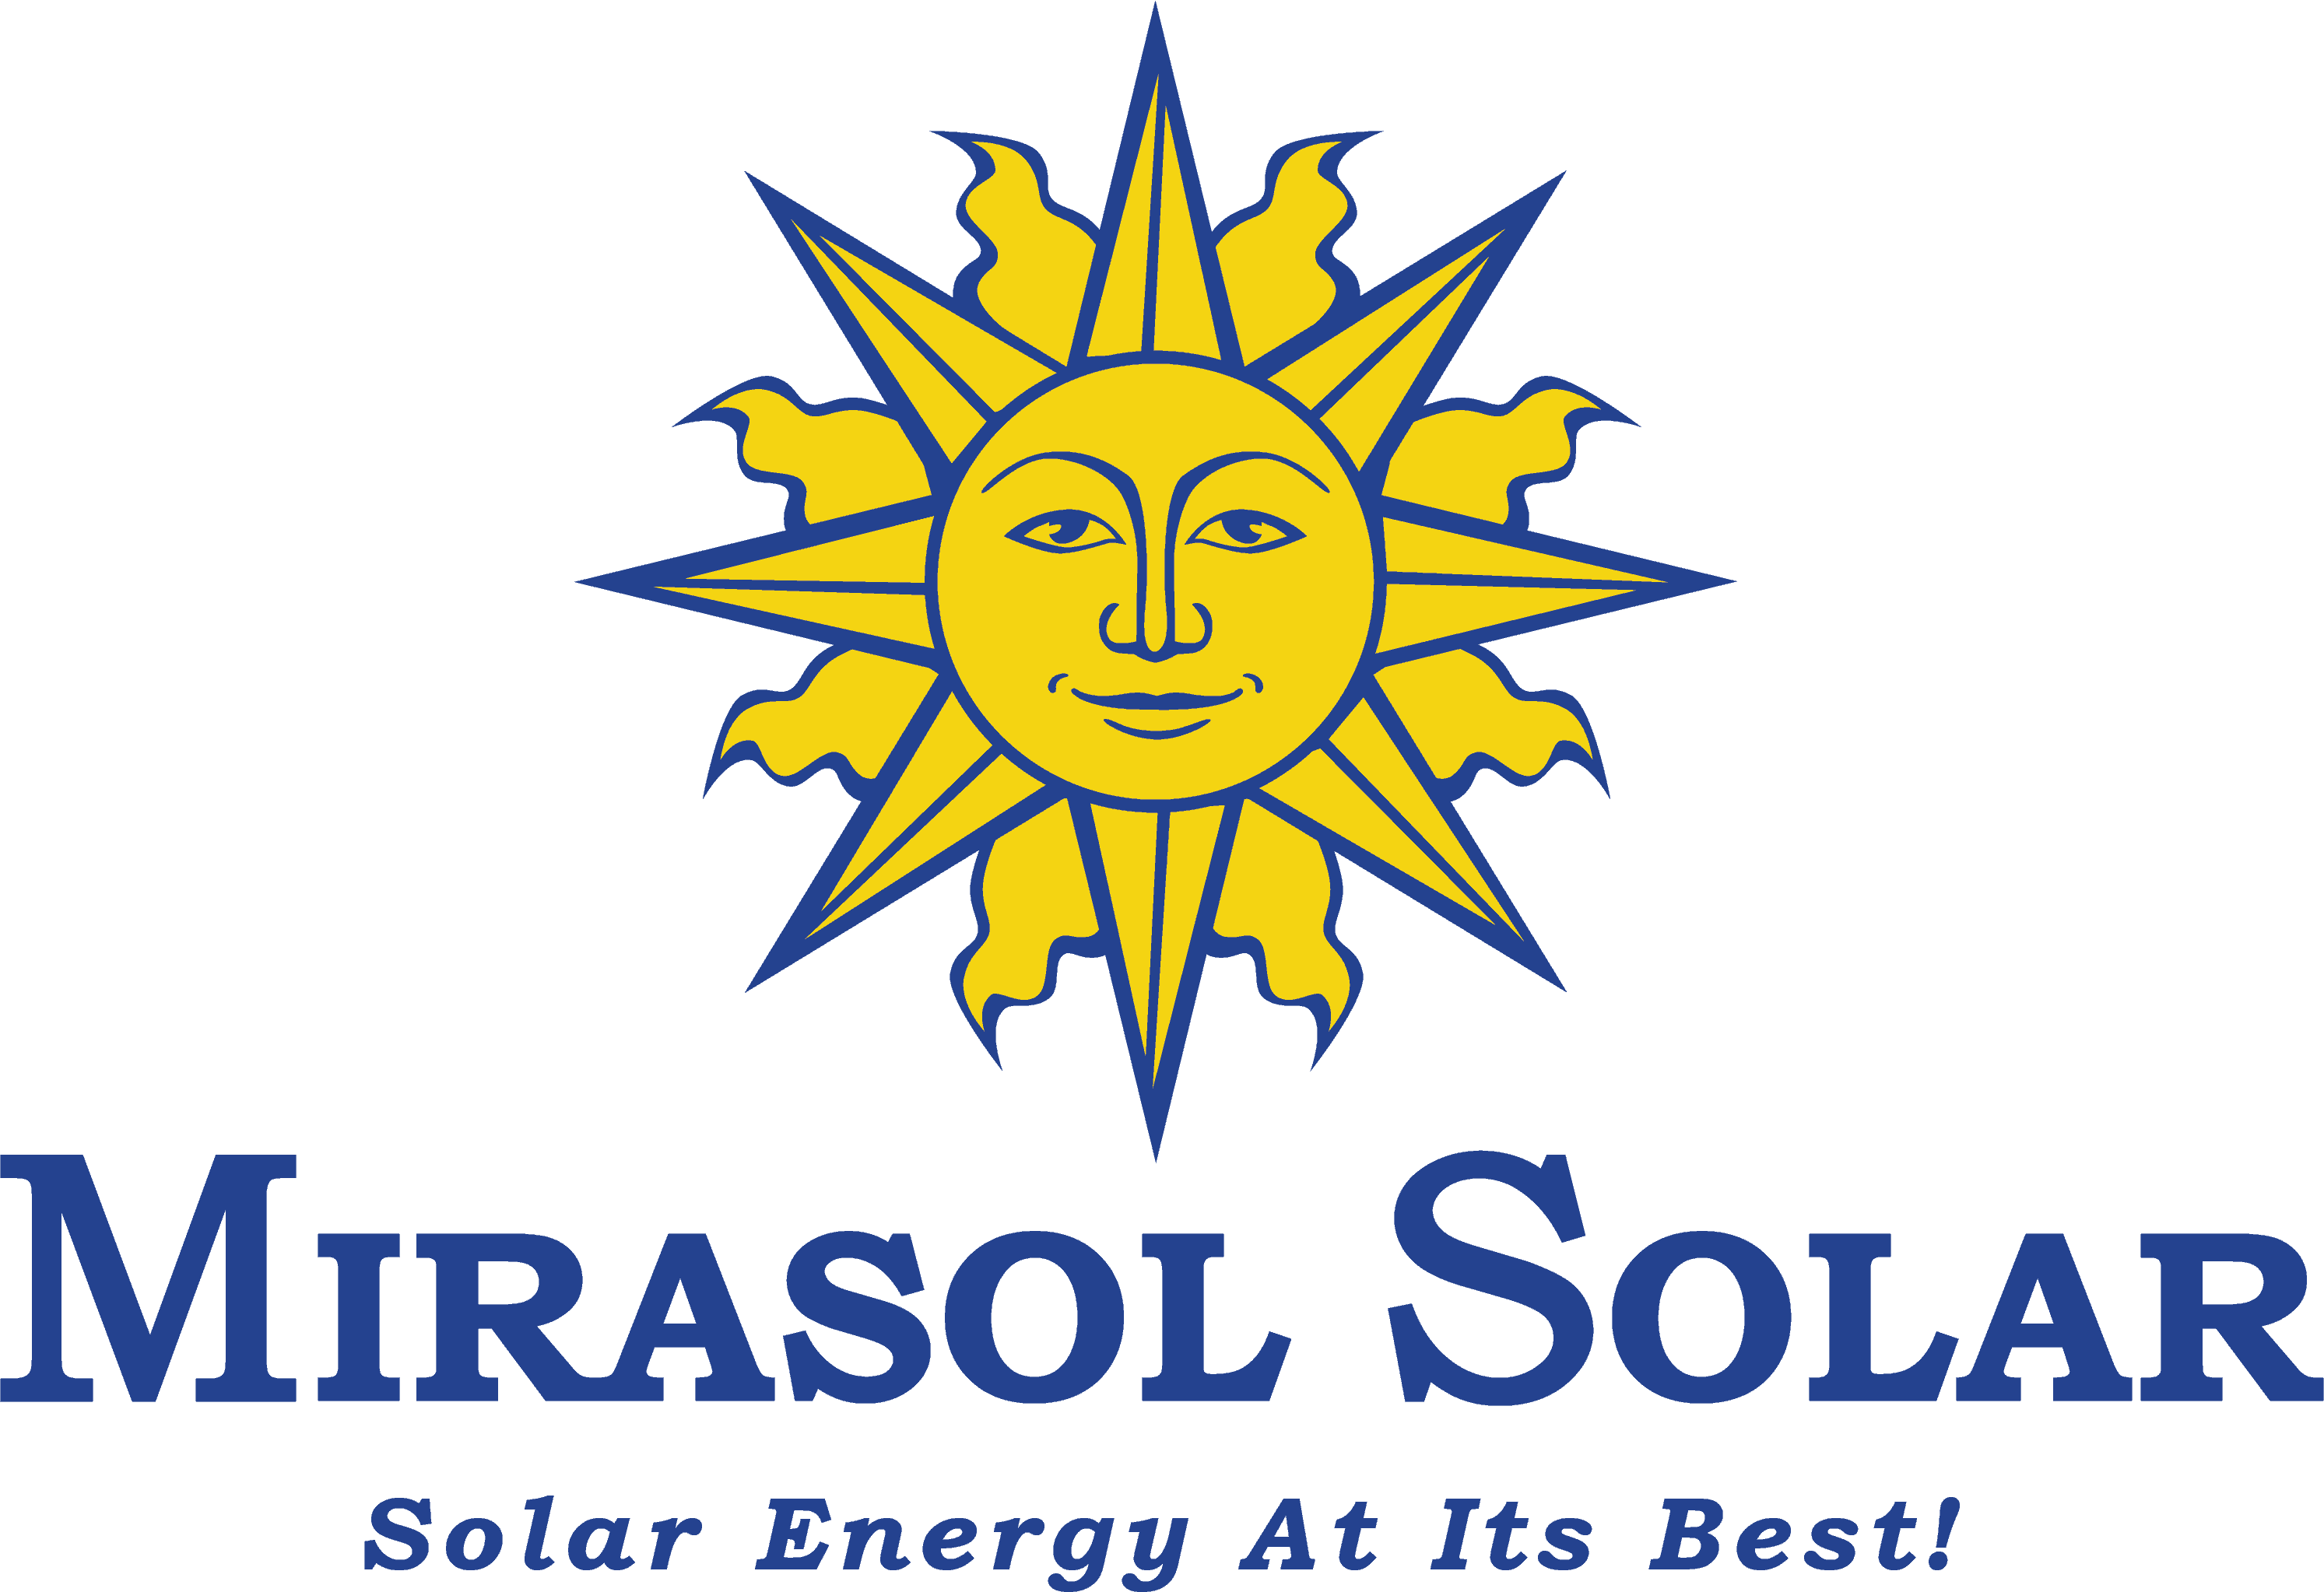 Mirasol Solar - Solar Energy At It's Best!